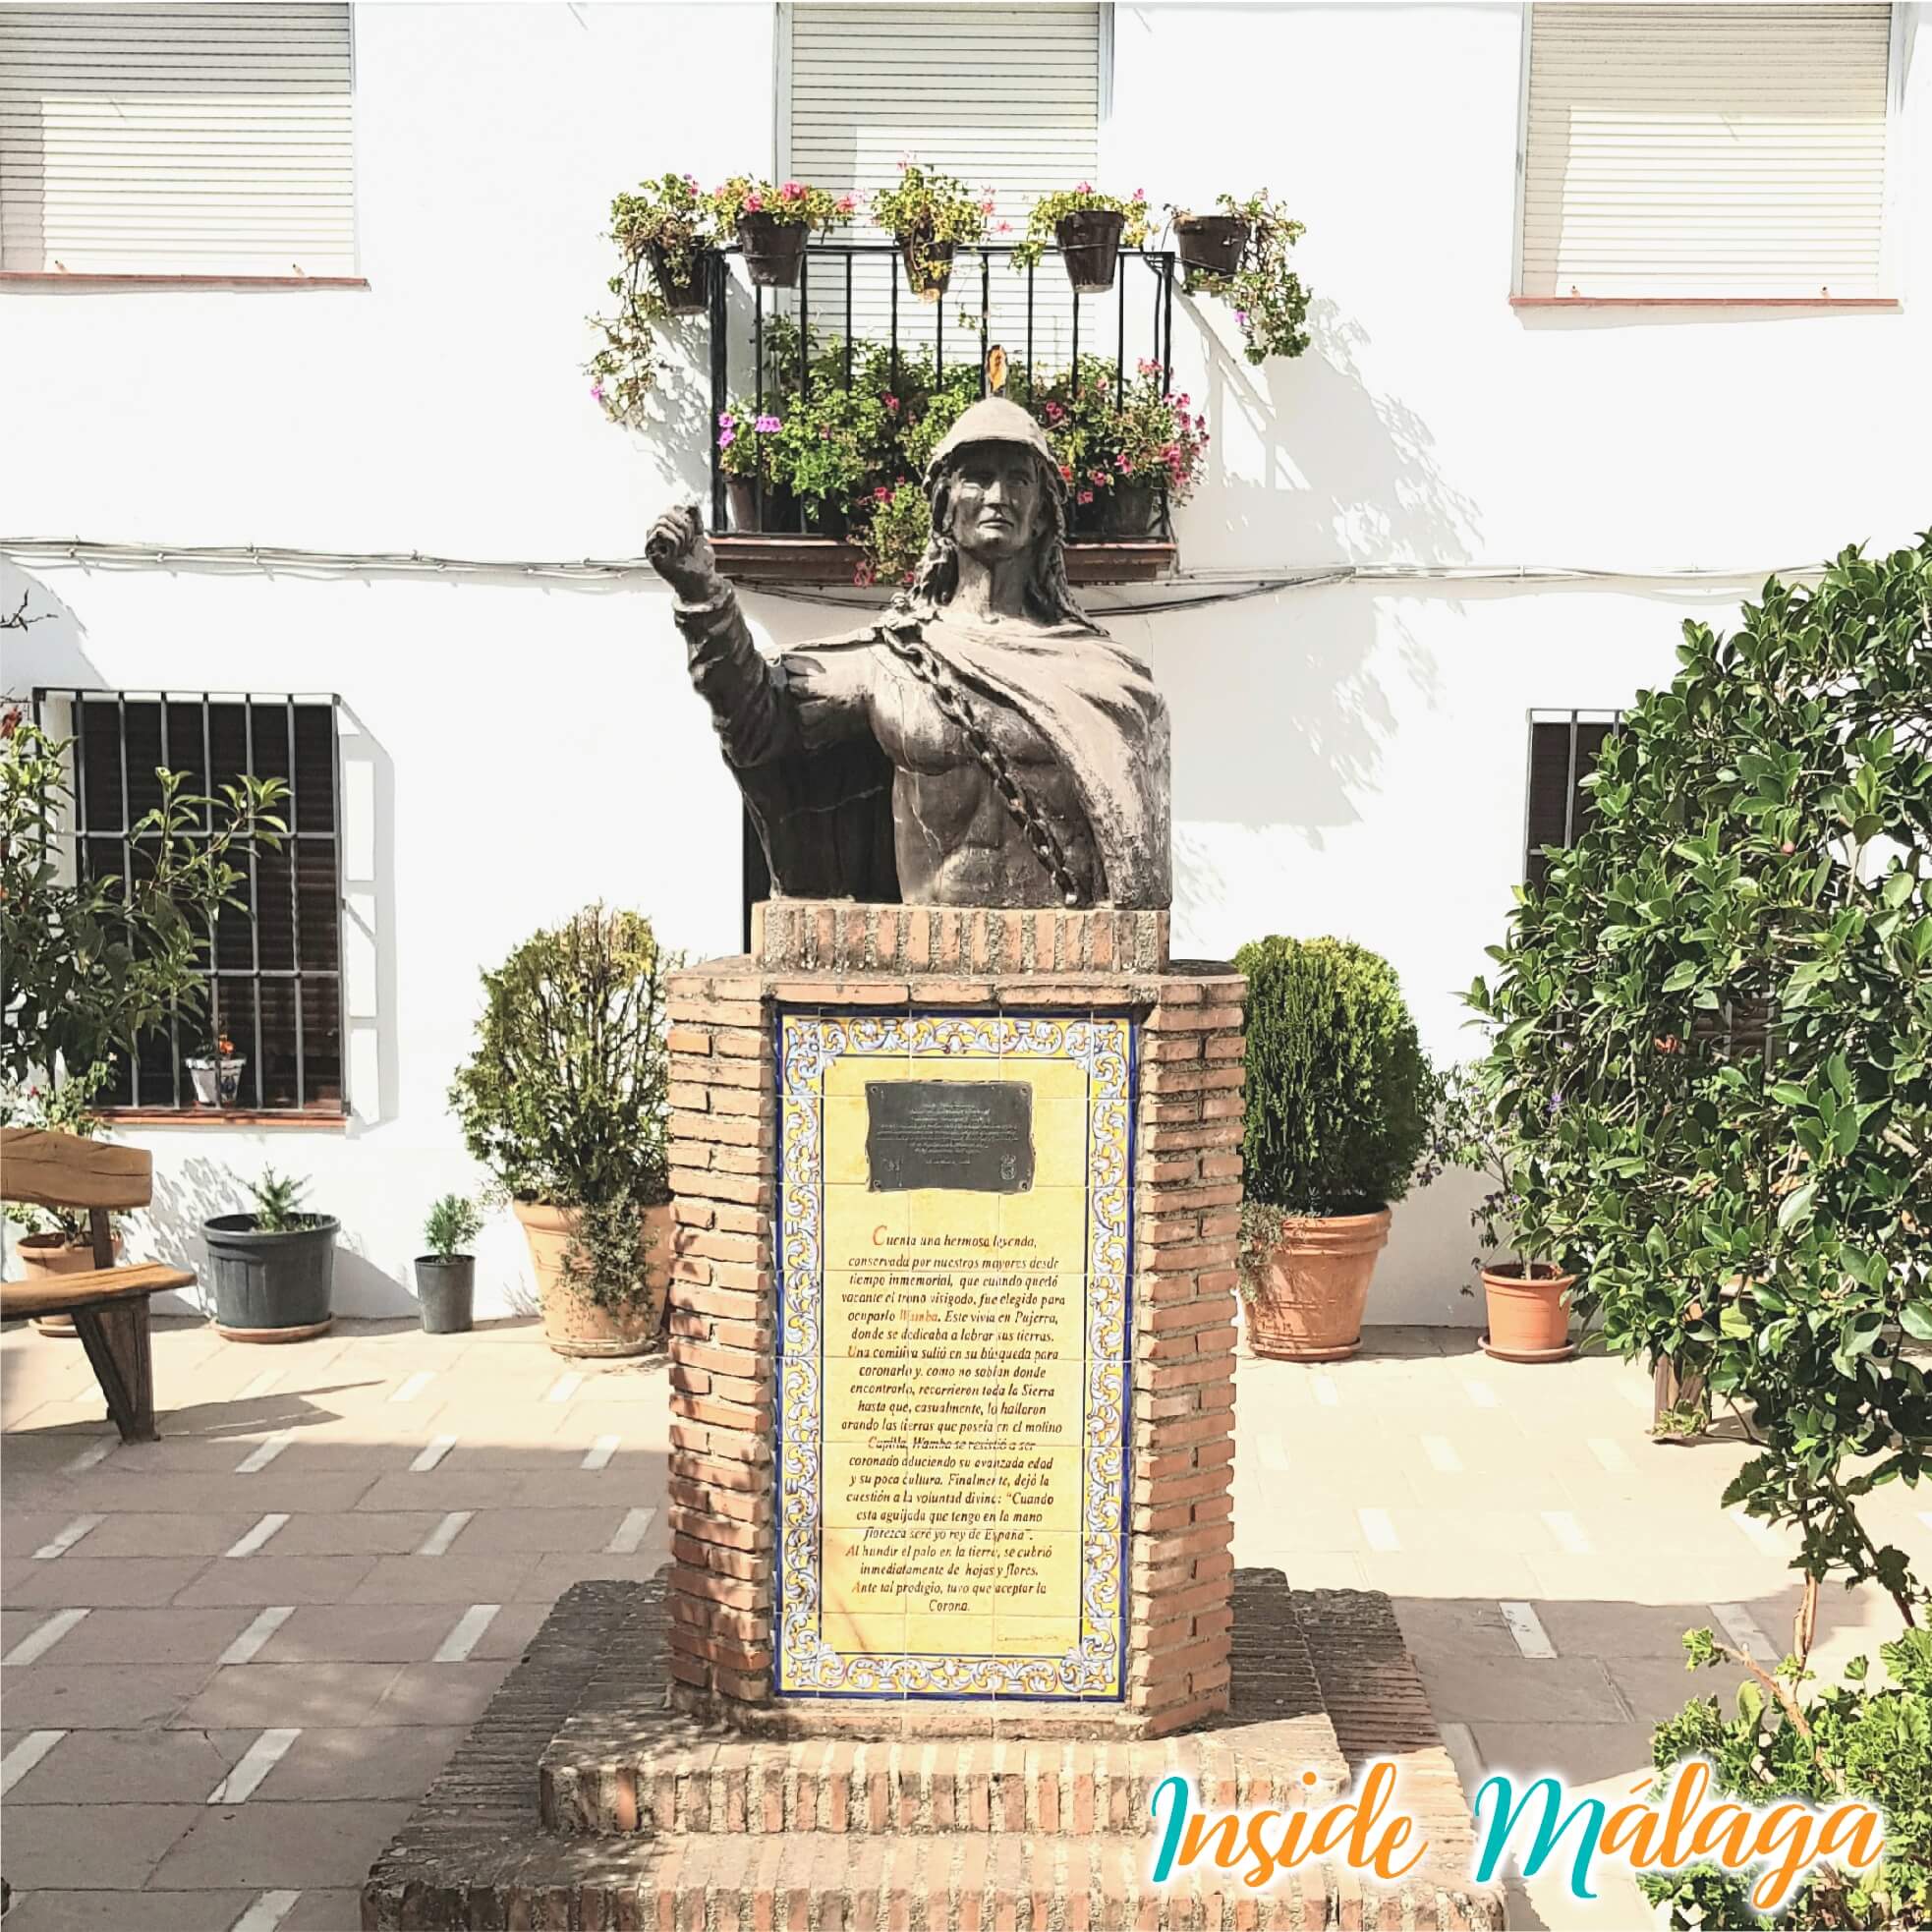 Buste Standbeeld Koning Wamba Pujerra Malaga